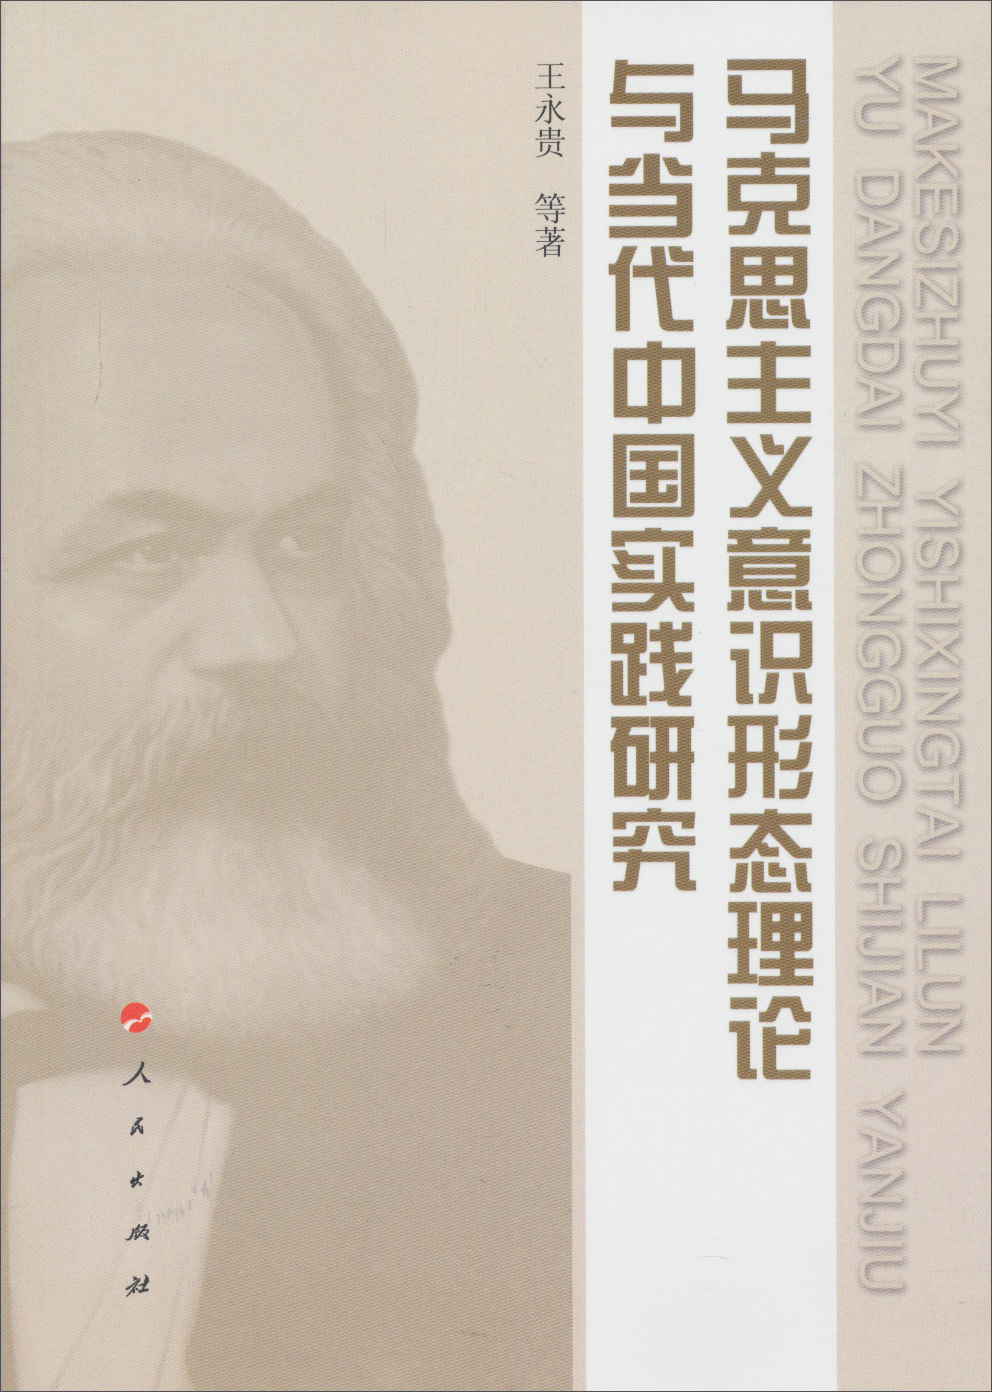 马克思主义意识形态理论与当代中国实践研究 kindle格式下载